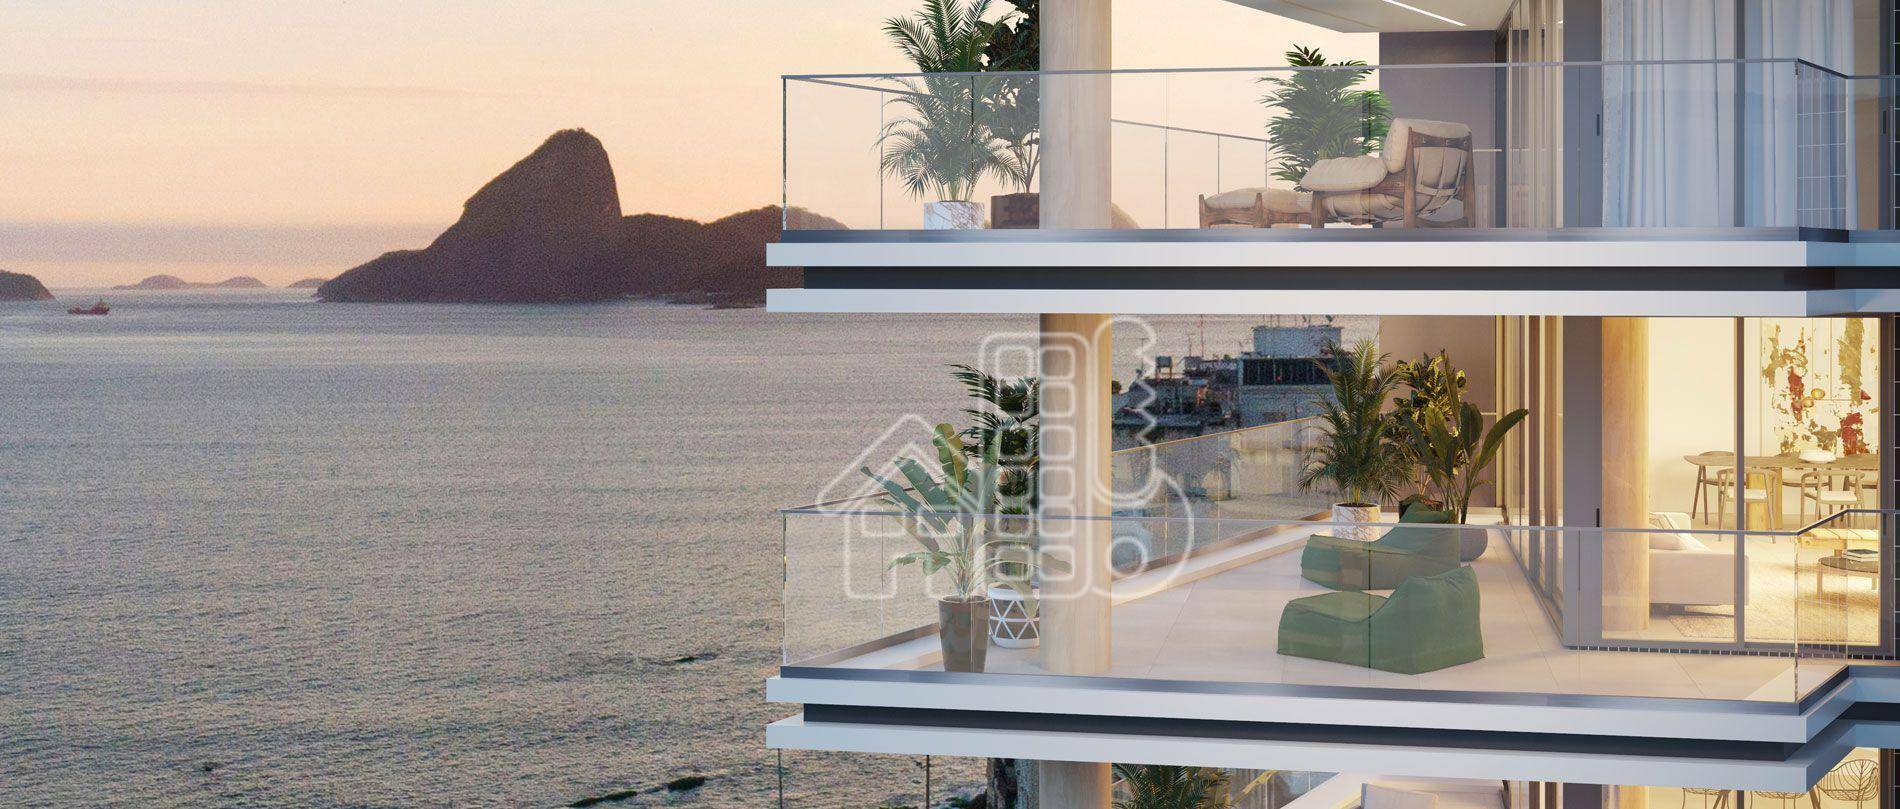 The Edge com 4 quartos à venda, 235 m² por R$ 3.380.000 - Icaraí - Niterói/RJ